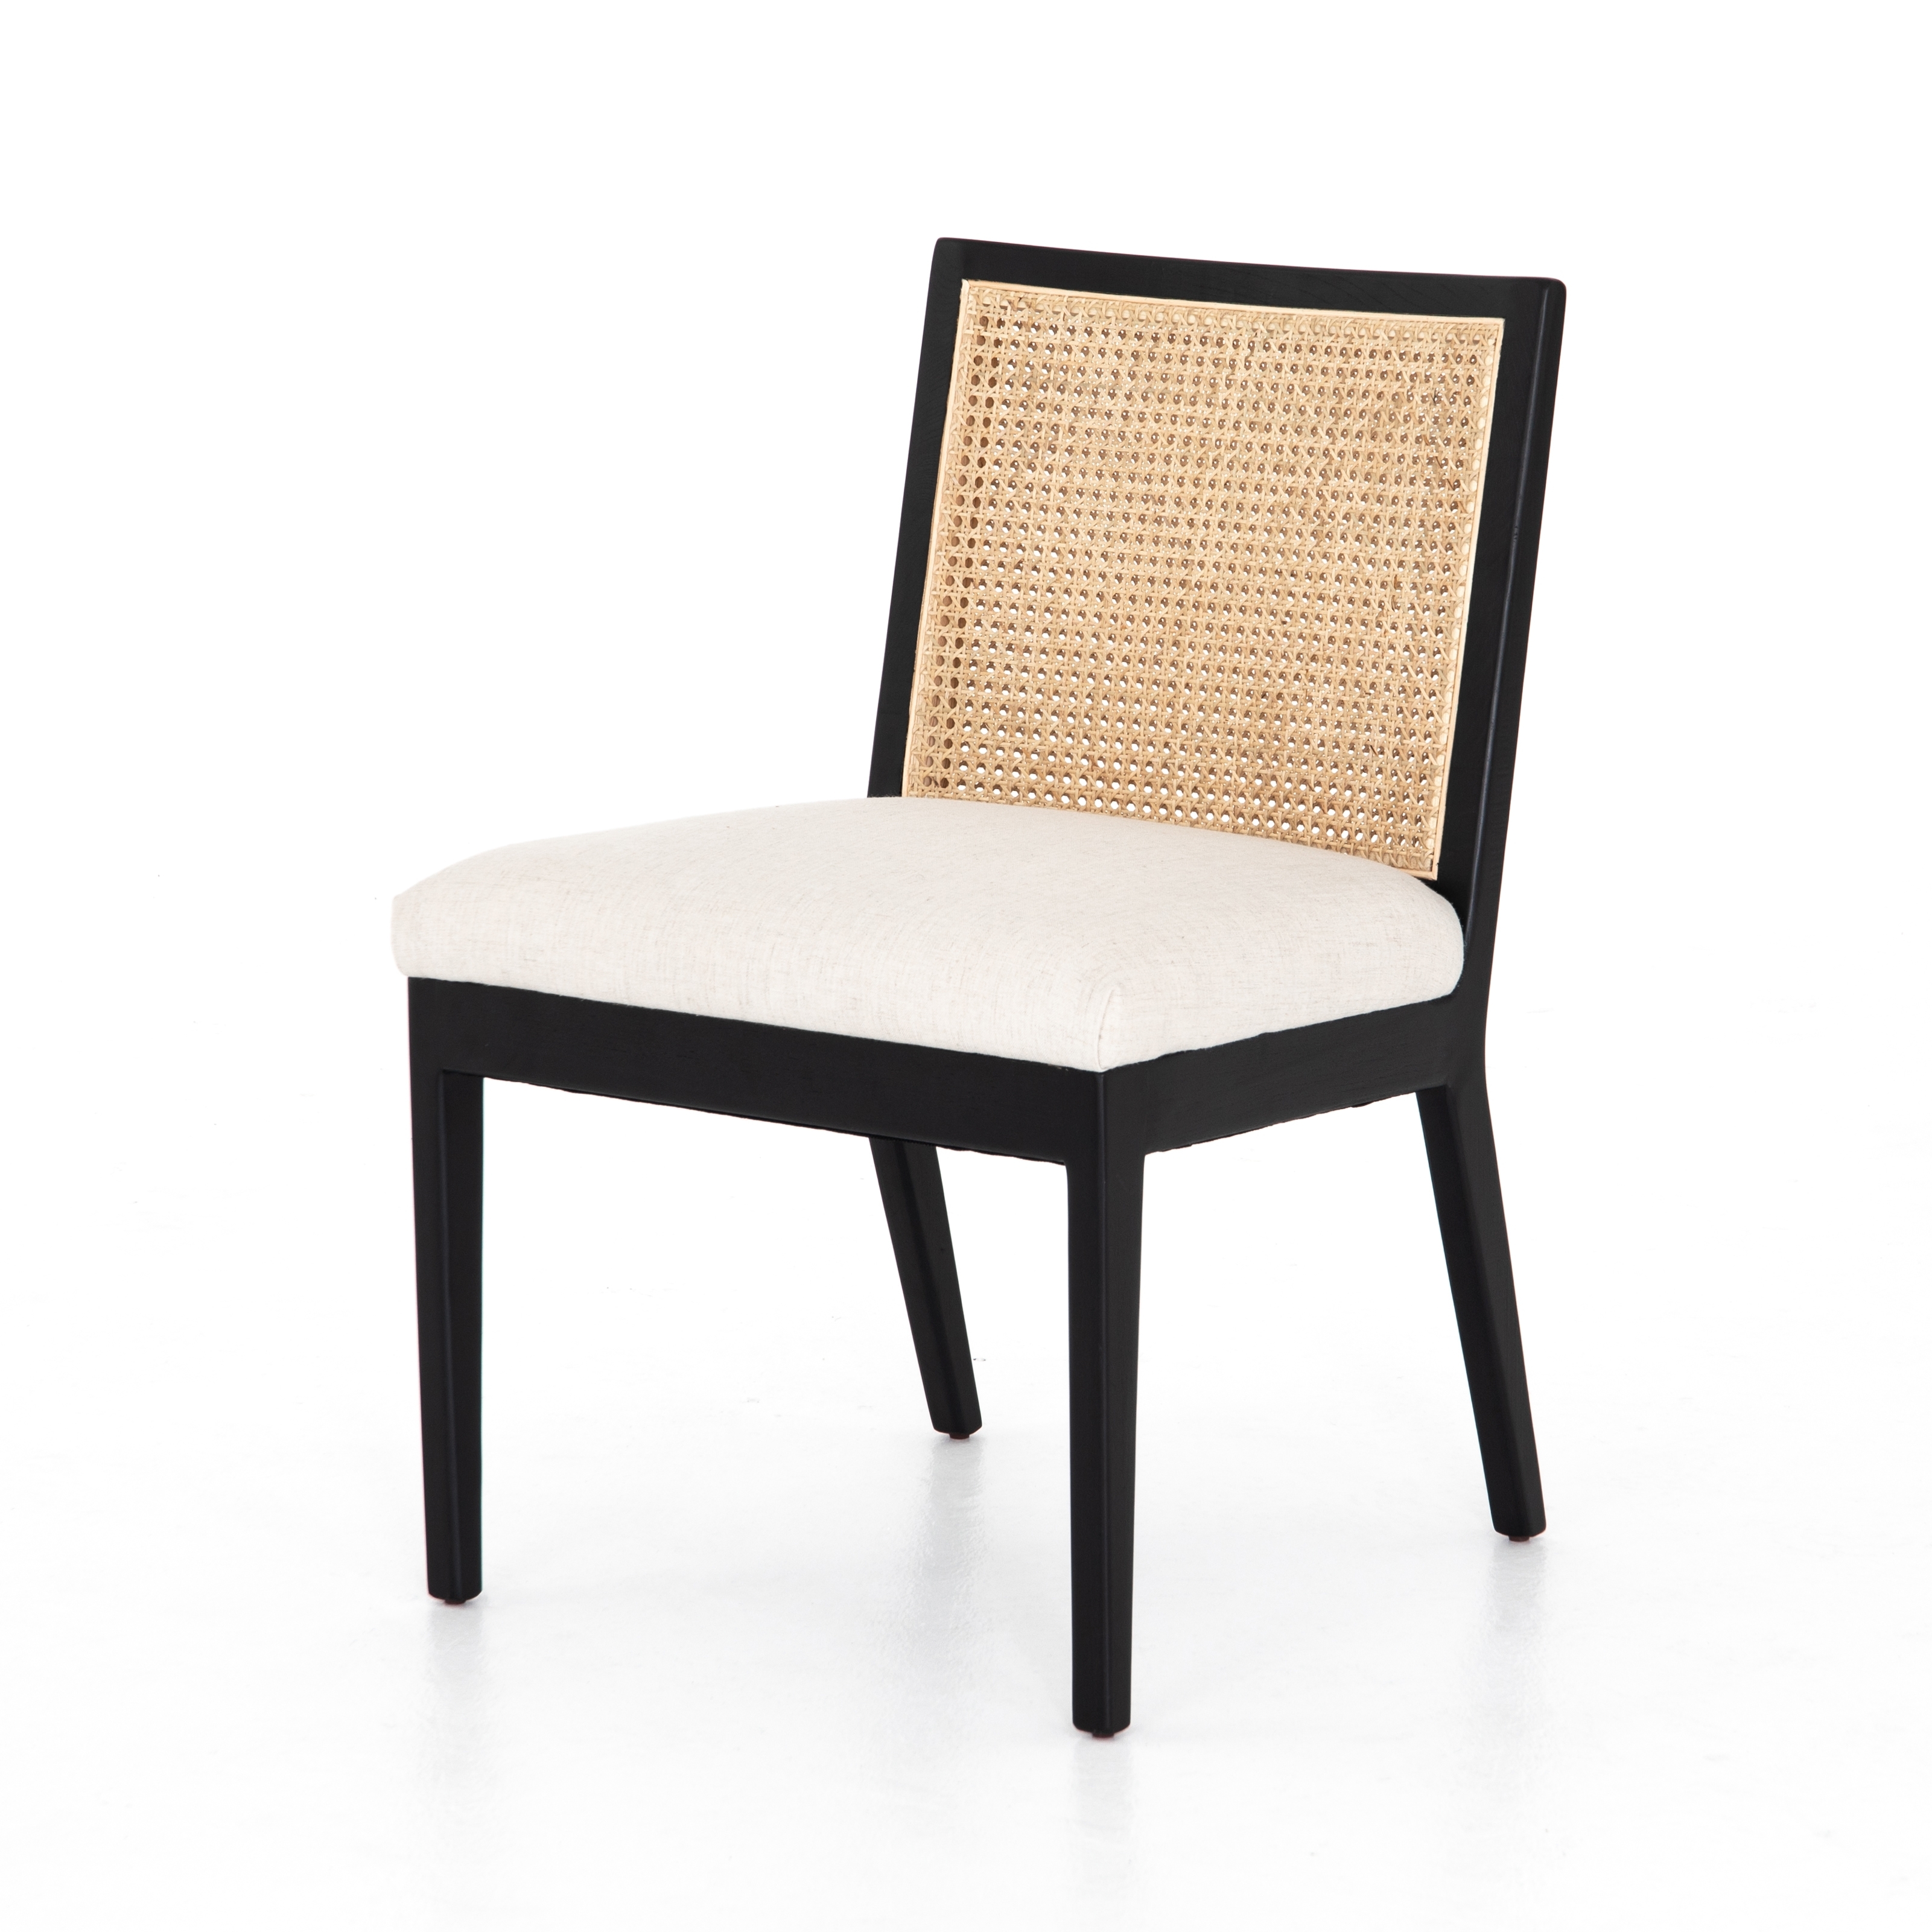 Antonia Armless Dining Chair-Savile Flax - Image 0